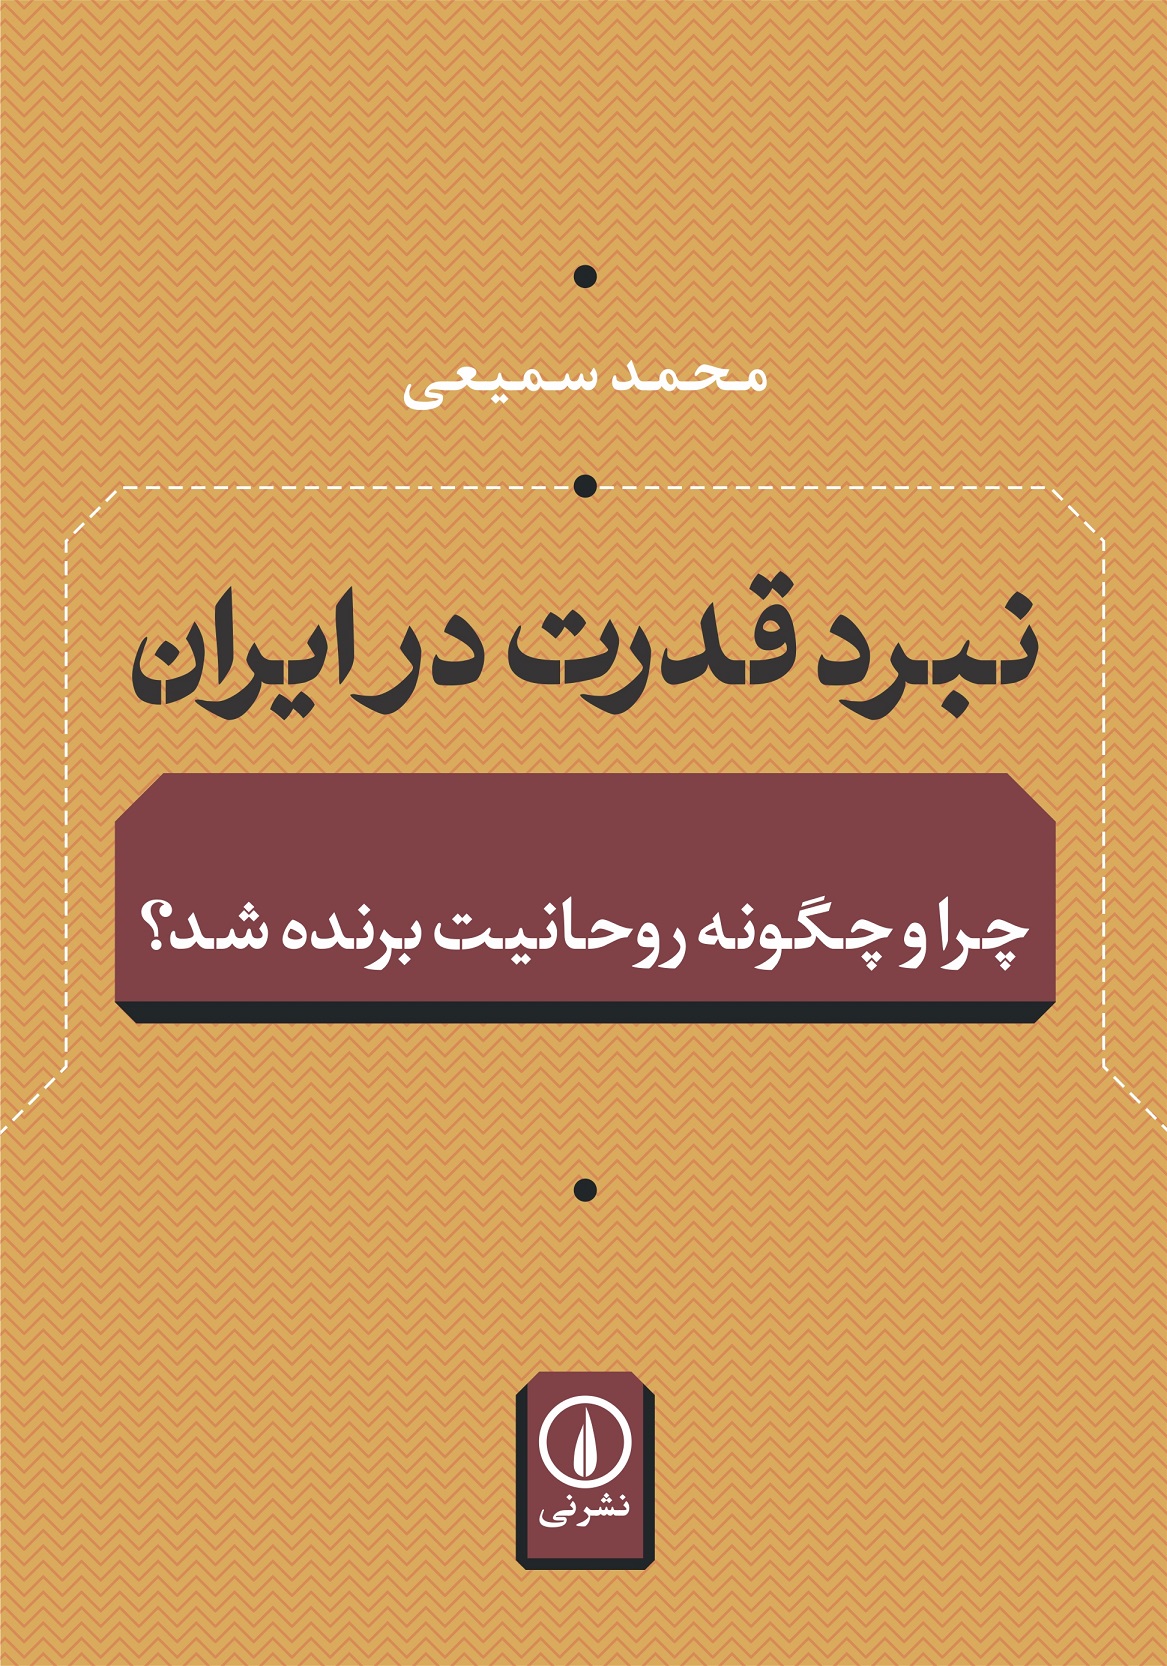 NABARDeGHODRAT-dar-IRAN-ORIG-97-01-20